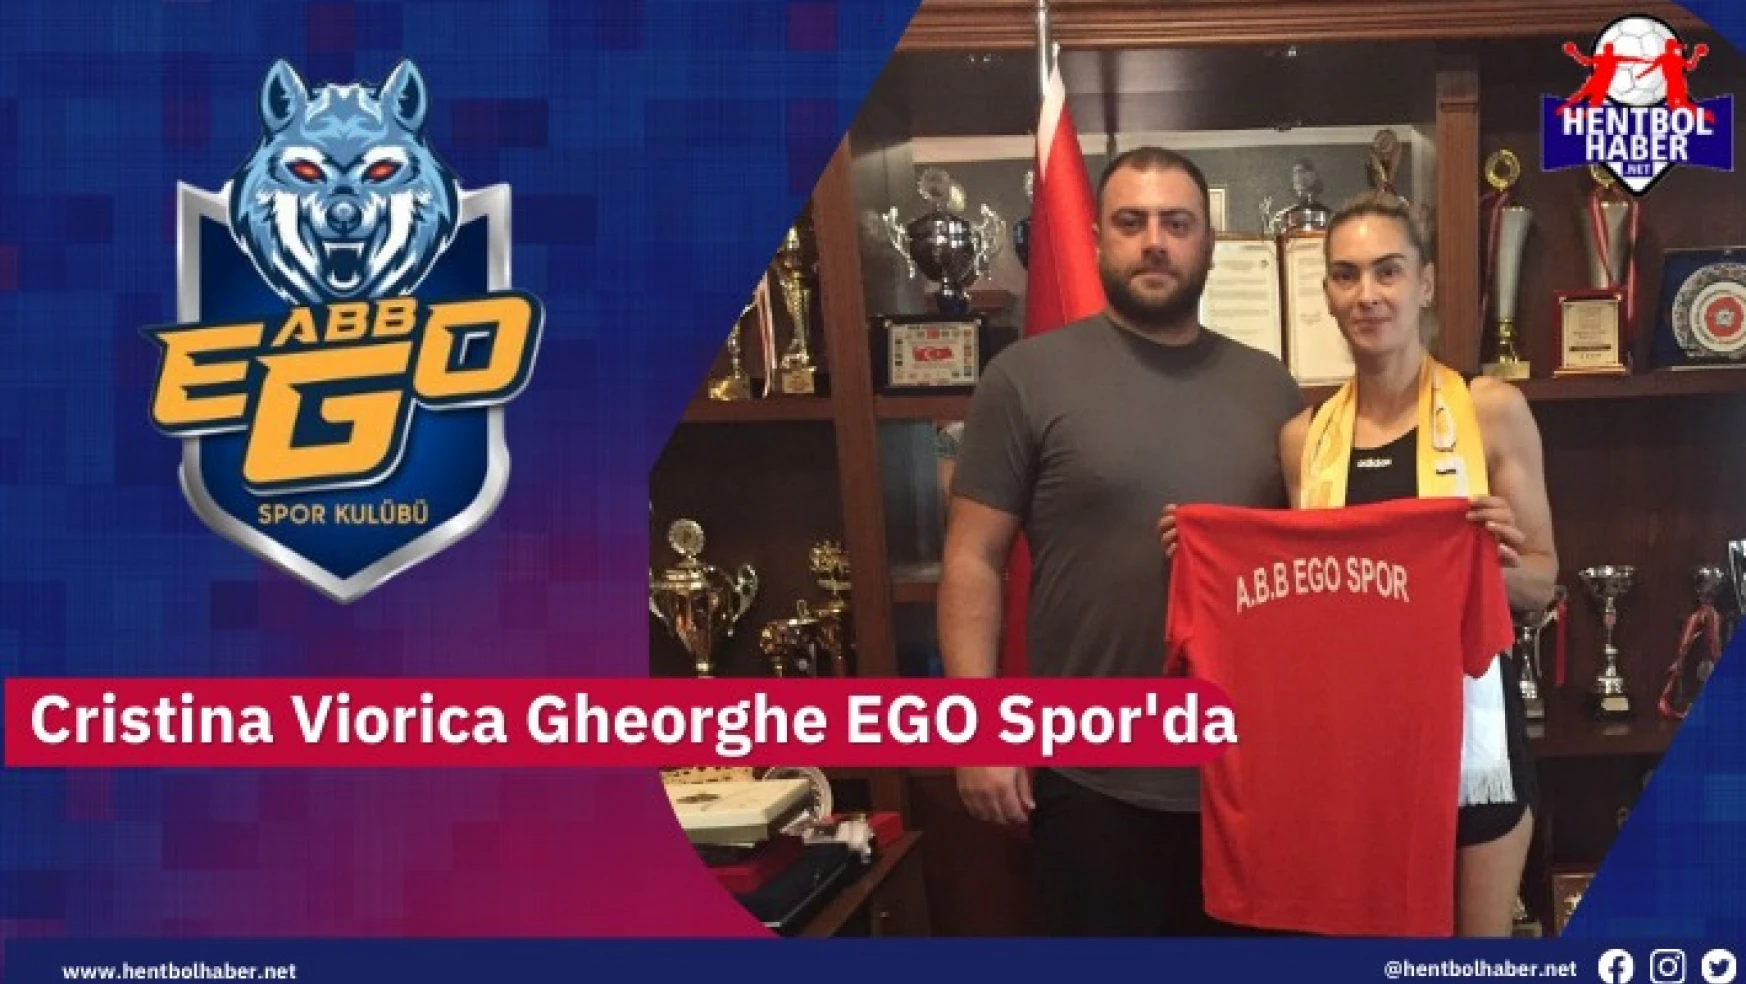 Cristina Viorica Gheorghe’ya EGO Spor’da